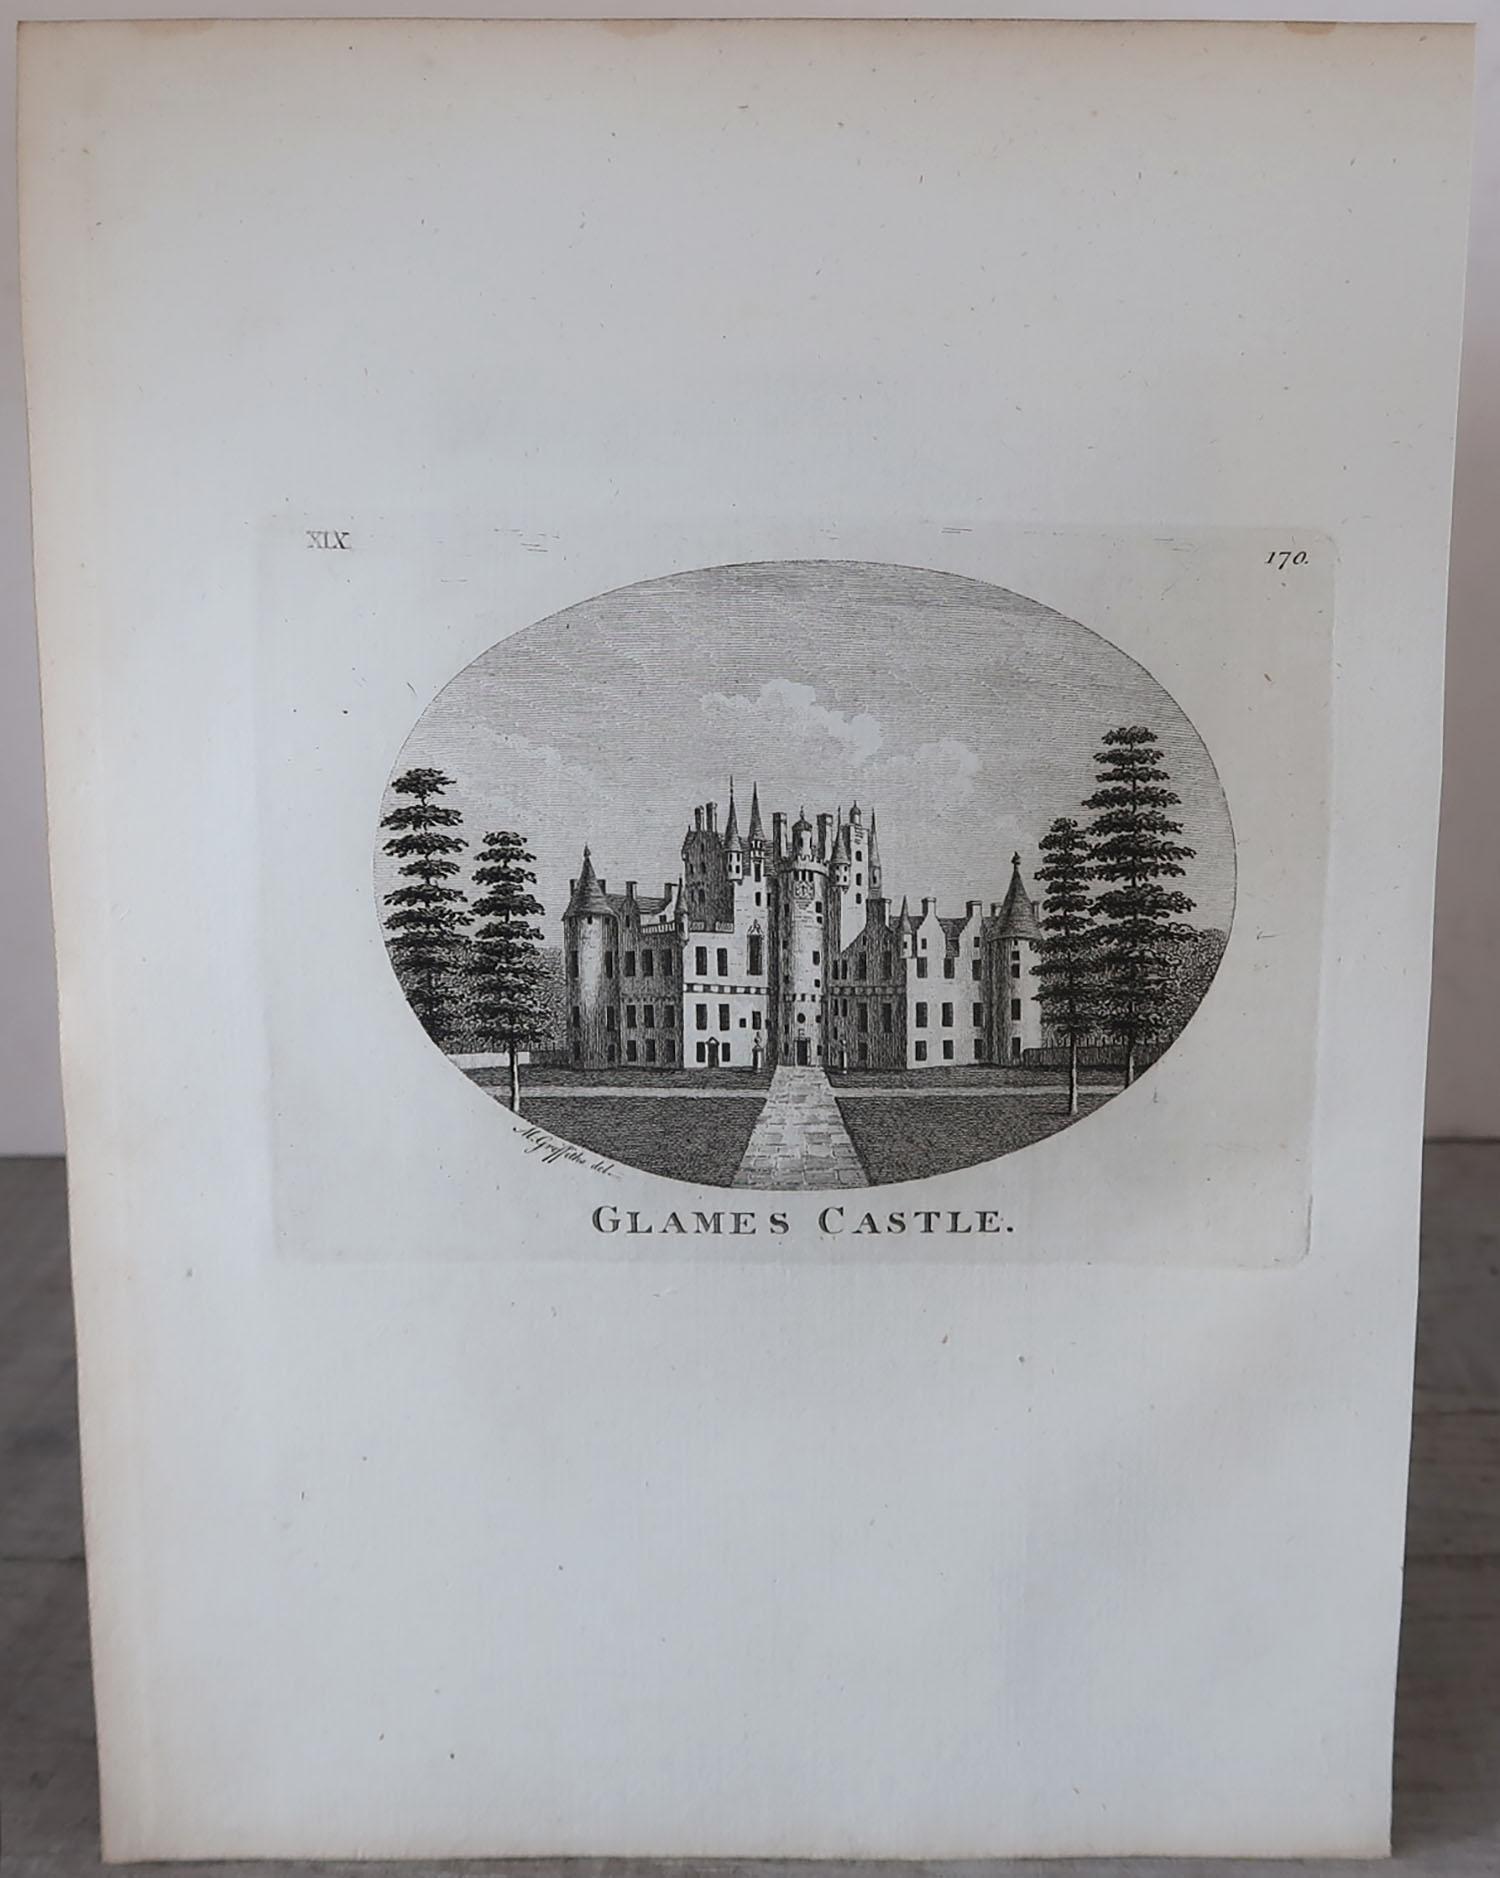 Prachtvoller Satz von 8 Drucken von hauptsächlich schottischen Schlössern. 2 von den englischen Grenzen.

Kupferstiche hauptsächlich nach Zeichnungen von Moses Griffiths.

Herausgegeben von Benjamin White, London, um 1770

Ungerahmt.

Einige